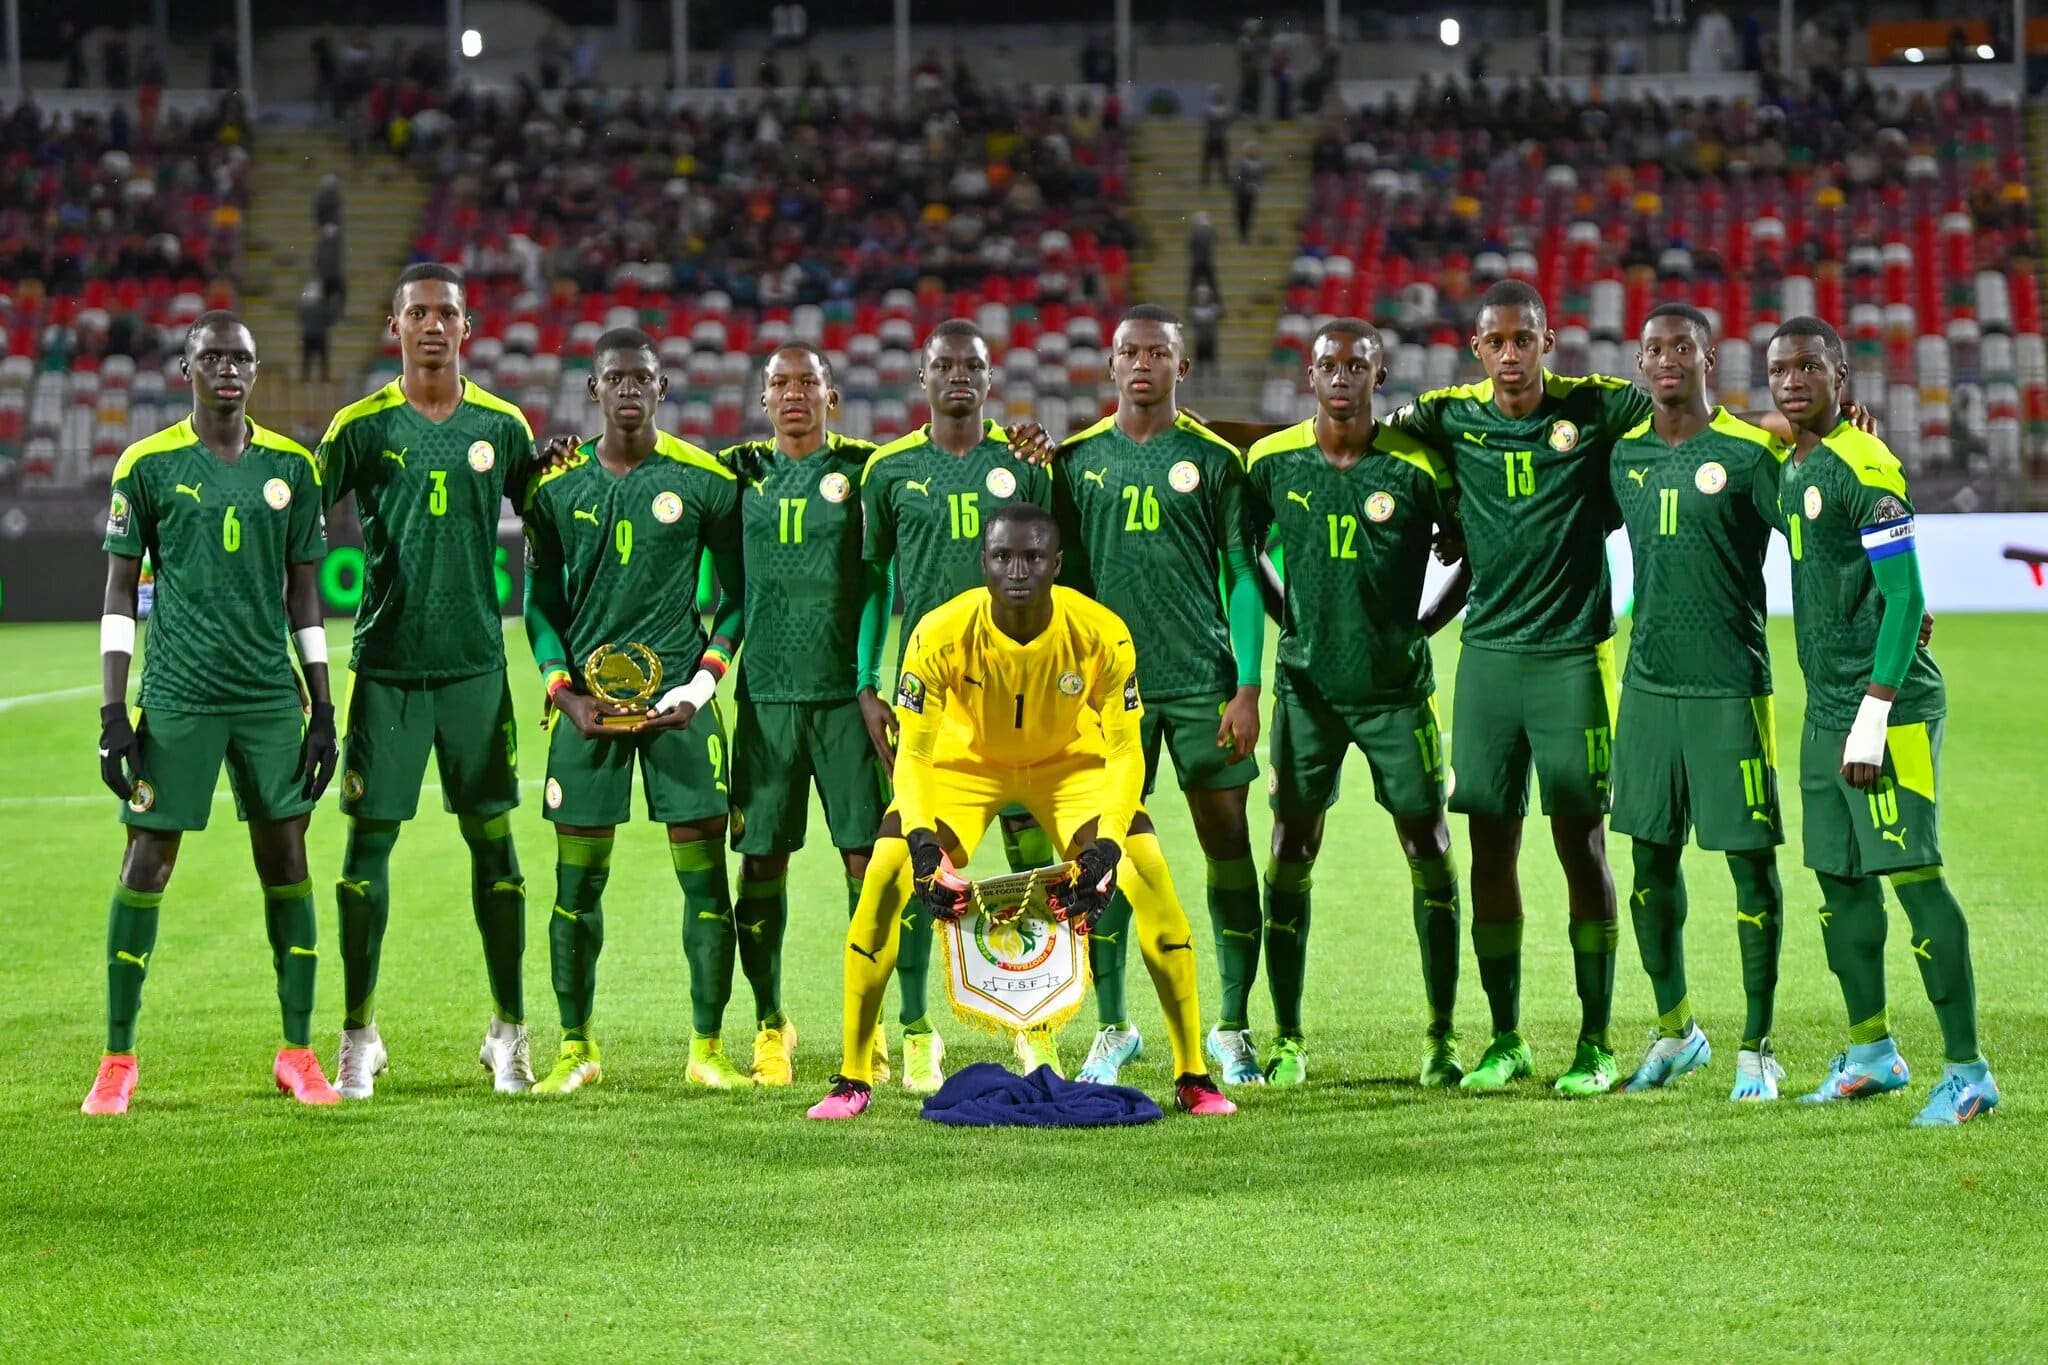 La razzia continue, le Sénégal renverse le Maroc sur le fil et remporte la CAN 17 !